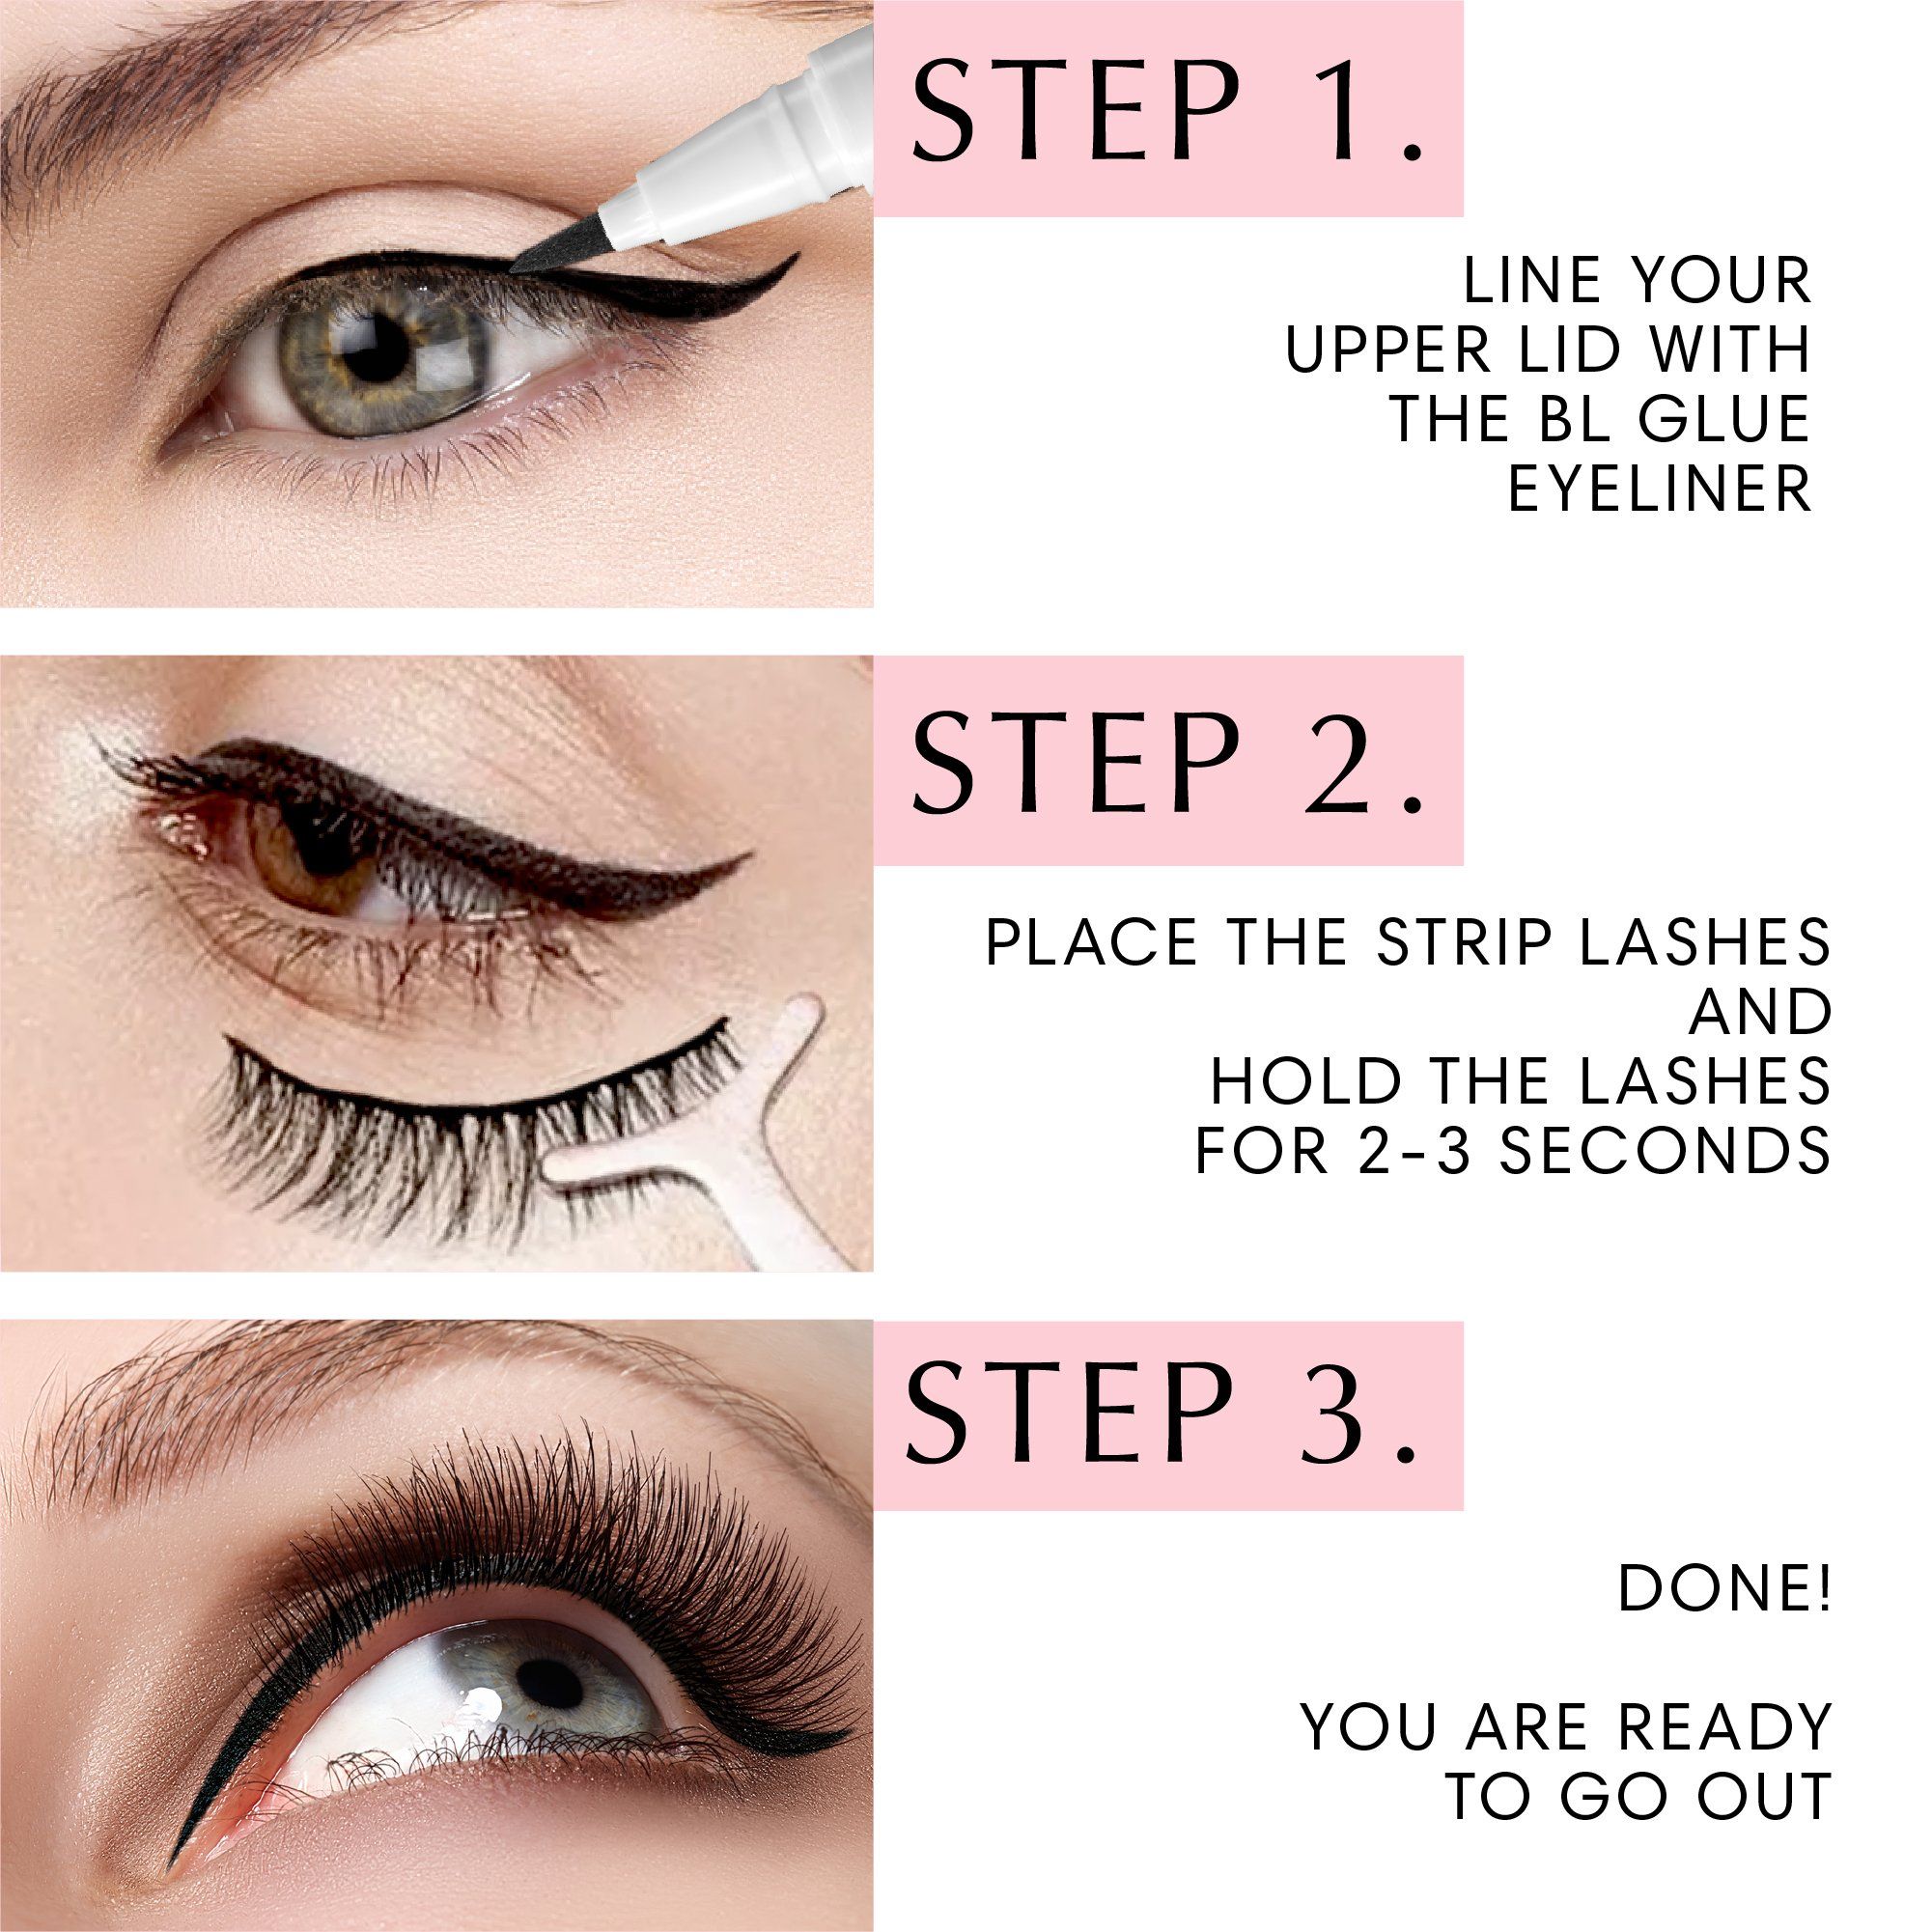 BL Glue Eyeliner - For strip false lash